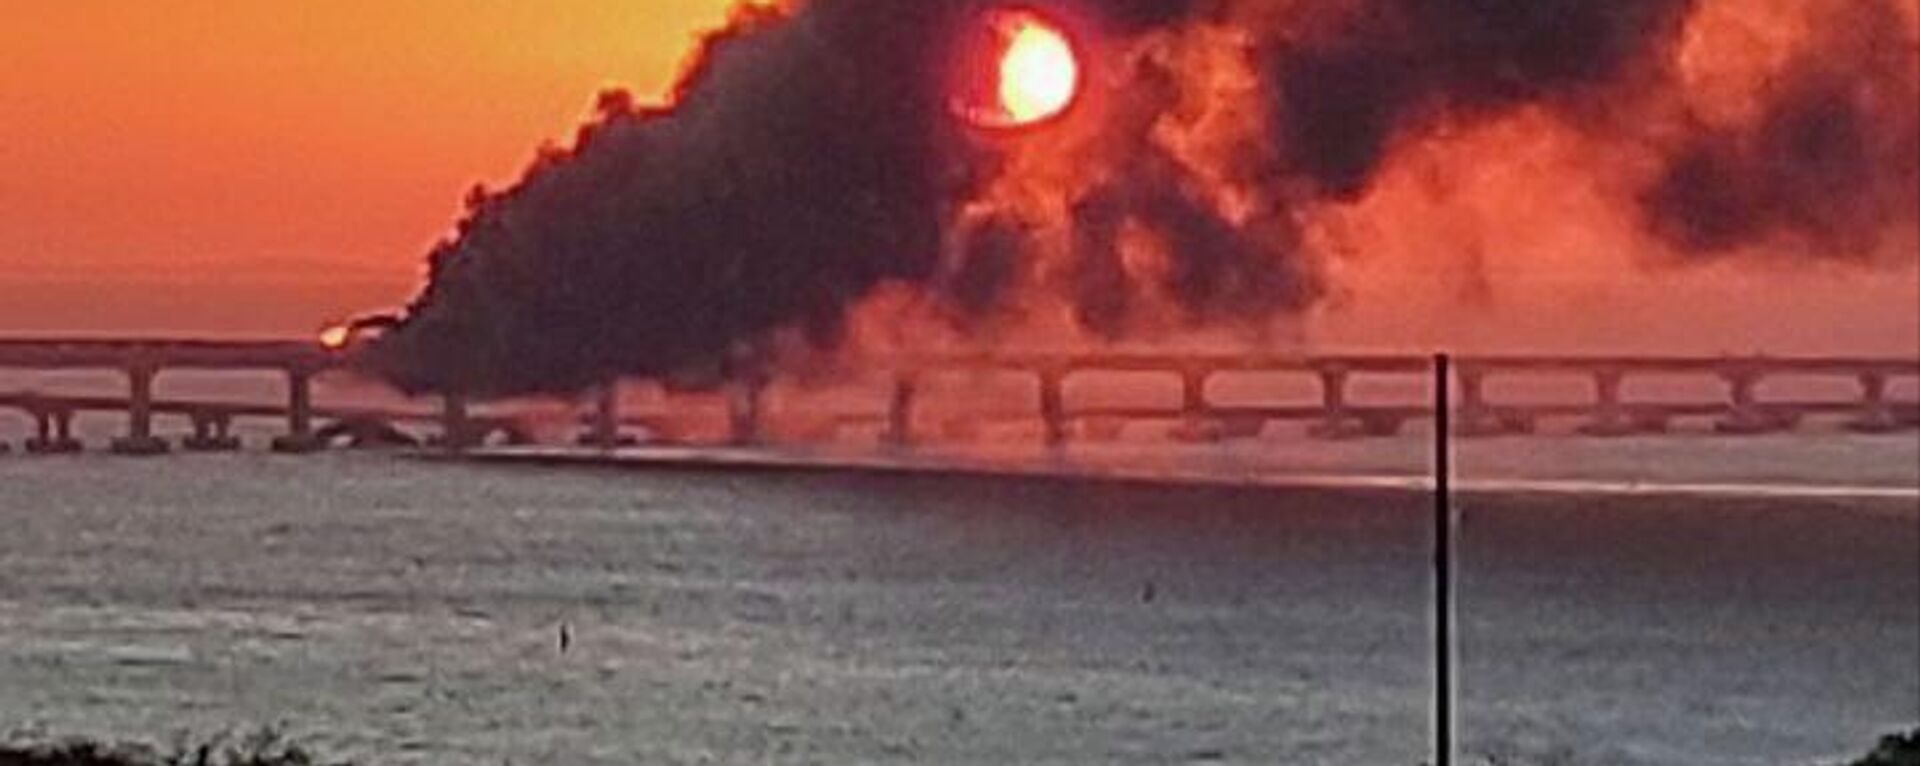 Пожар на крымском мосту, на автомобильной части которого со стороны Таманского полуострова произошел подрыв грузового автомобиля, повлекший за собой возгорание семи топливных цистерн железнодорожного состава - Sputnik Молдова, 1920, 08.10.2022